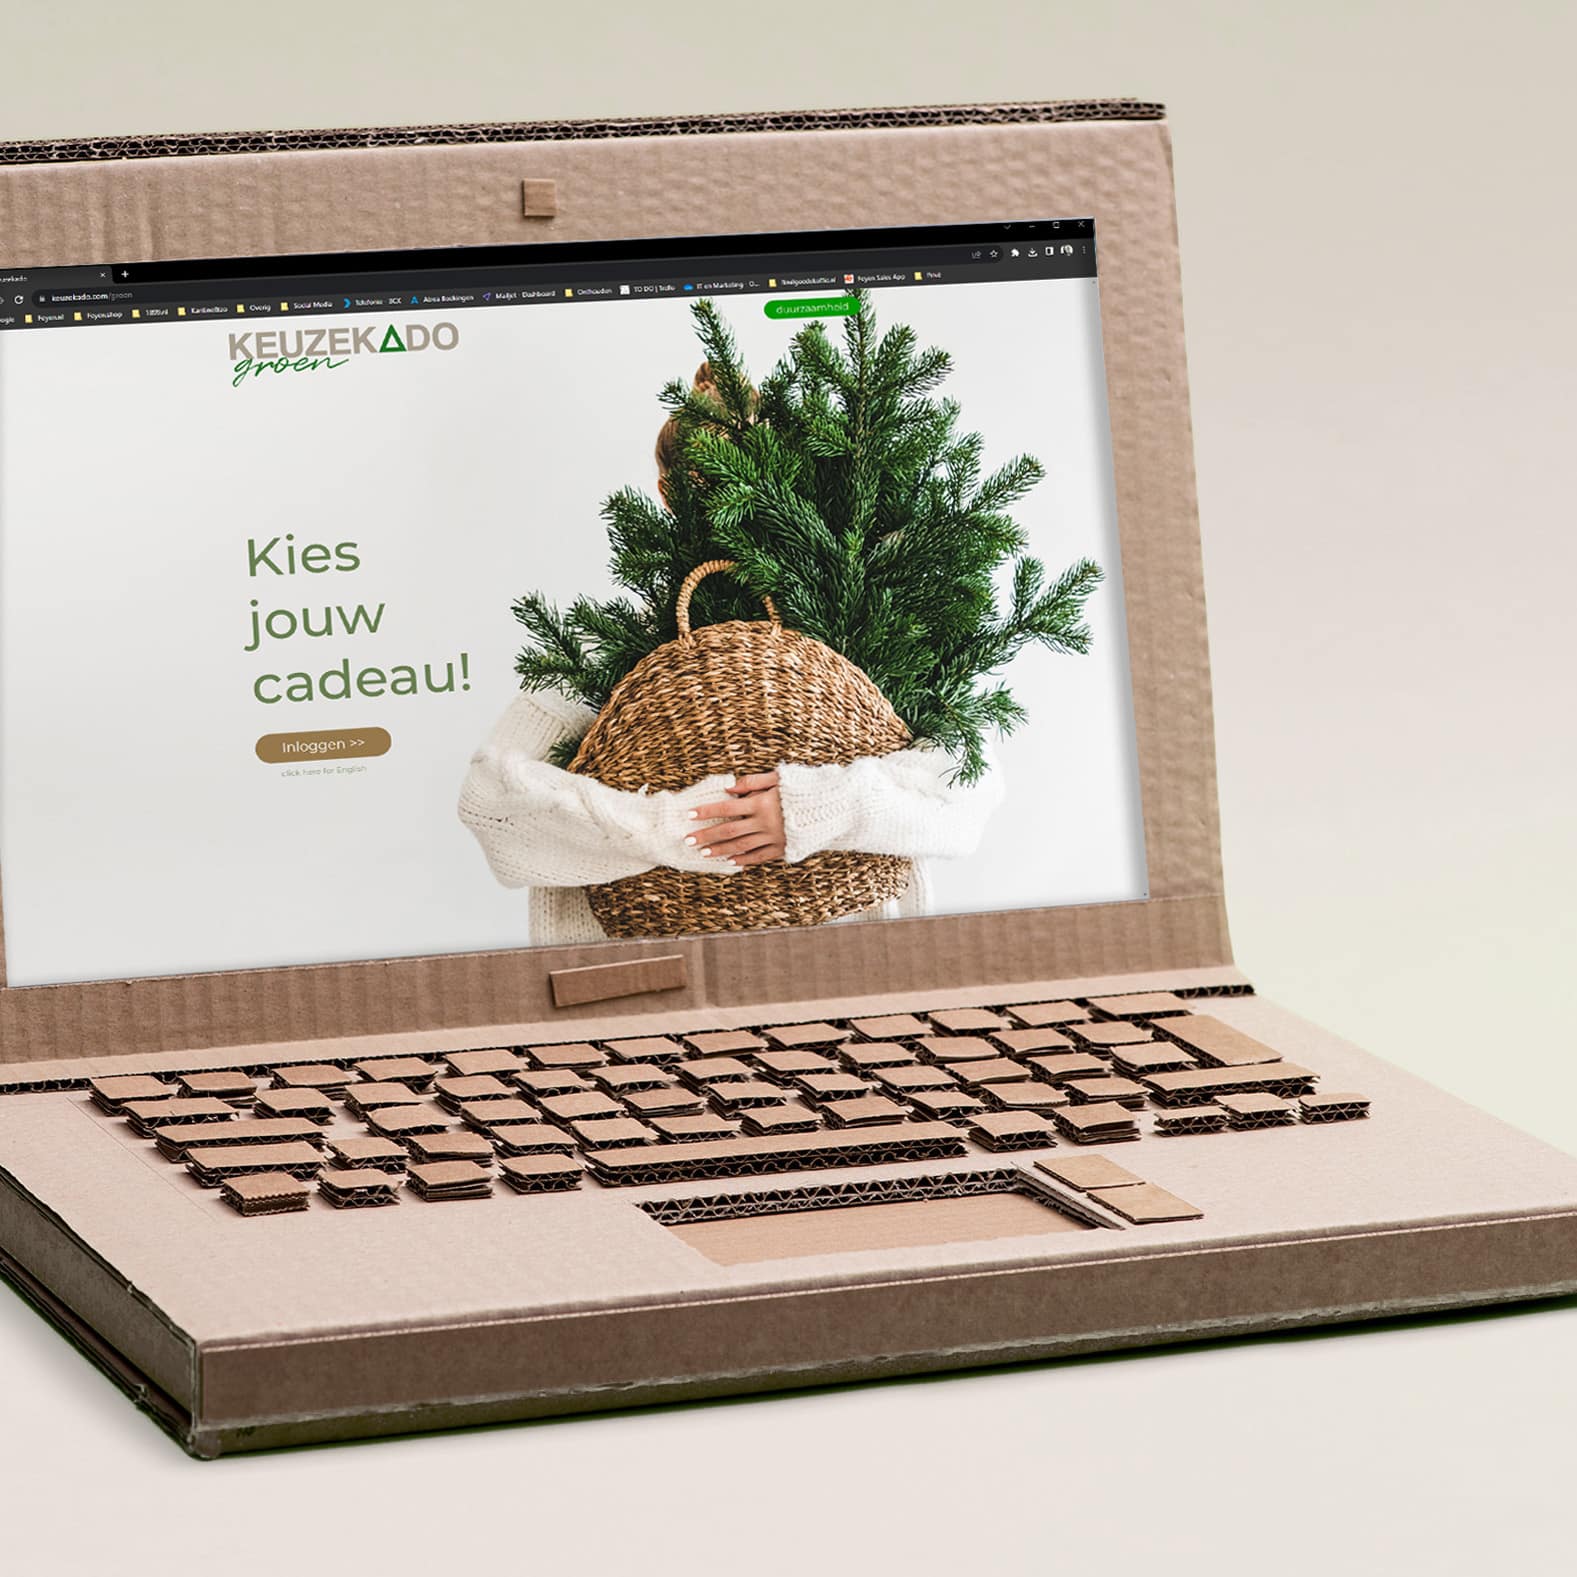 kerstpakketten keuzekado groen laptop